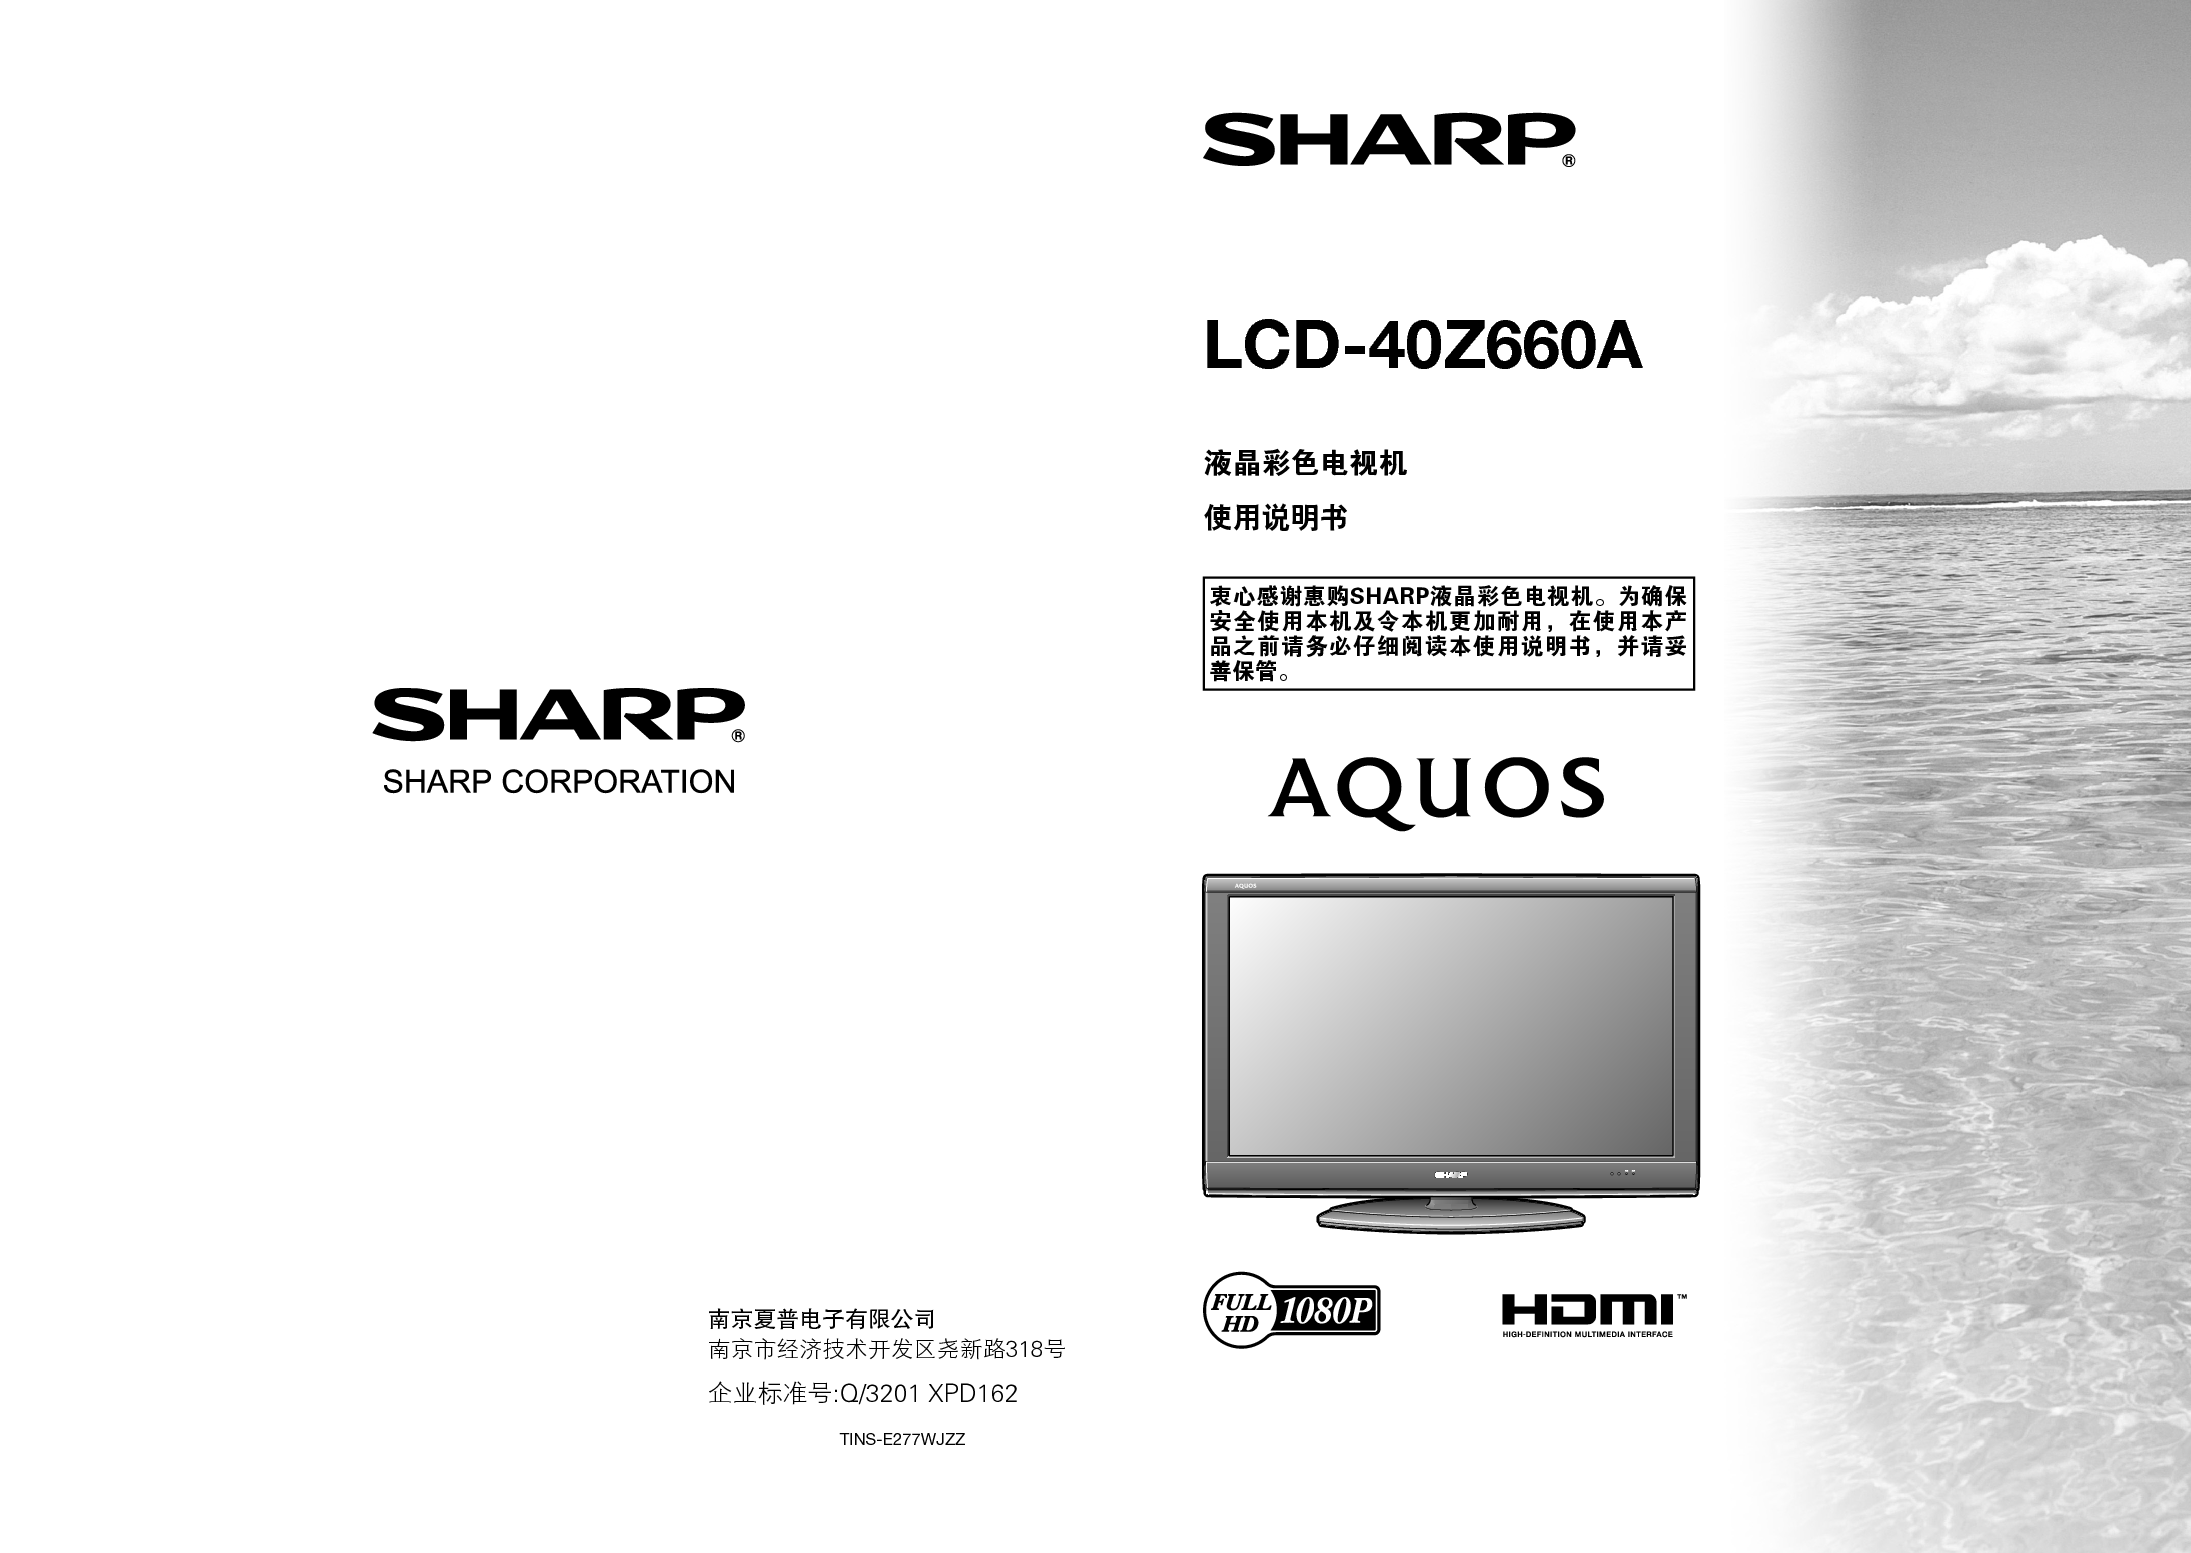 夏普 Sharp LCD-40Z660A 说明书 封面